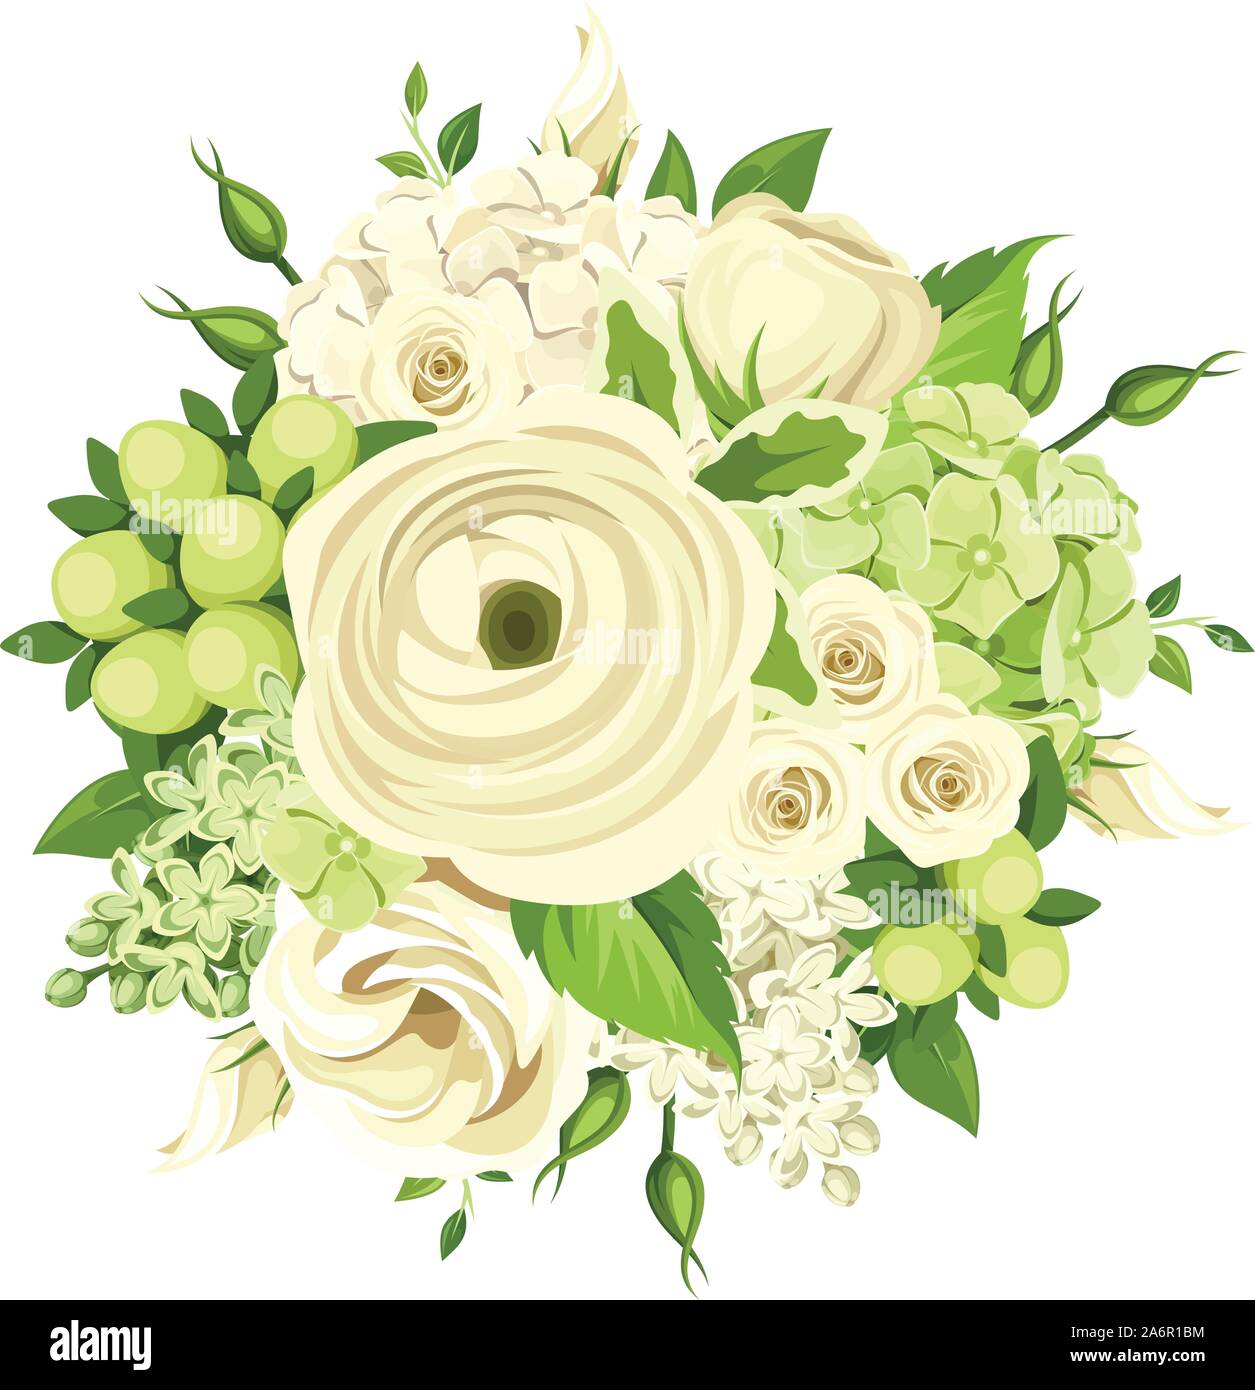 Bouquet di vettore con il bianco e il verde di rose, Ranunculus, lisianthus  ed ortensie fiori isolati su bianco Immagine e Vettoriale - Alamy